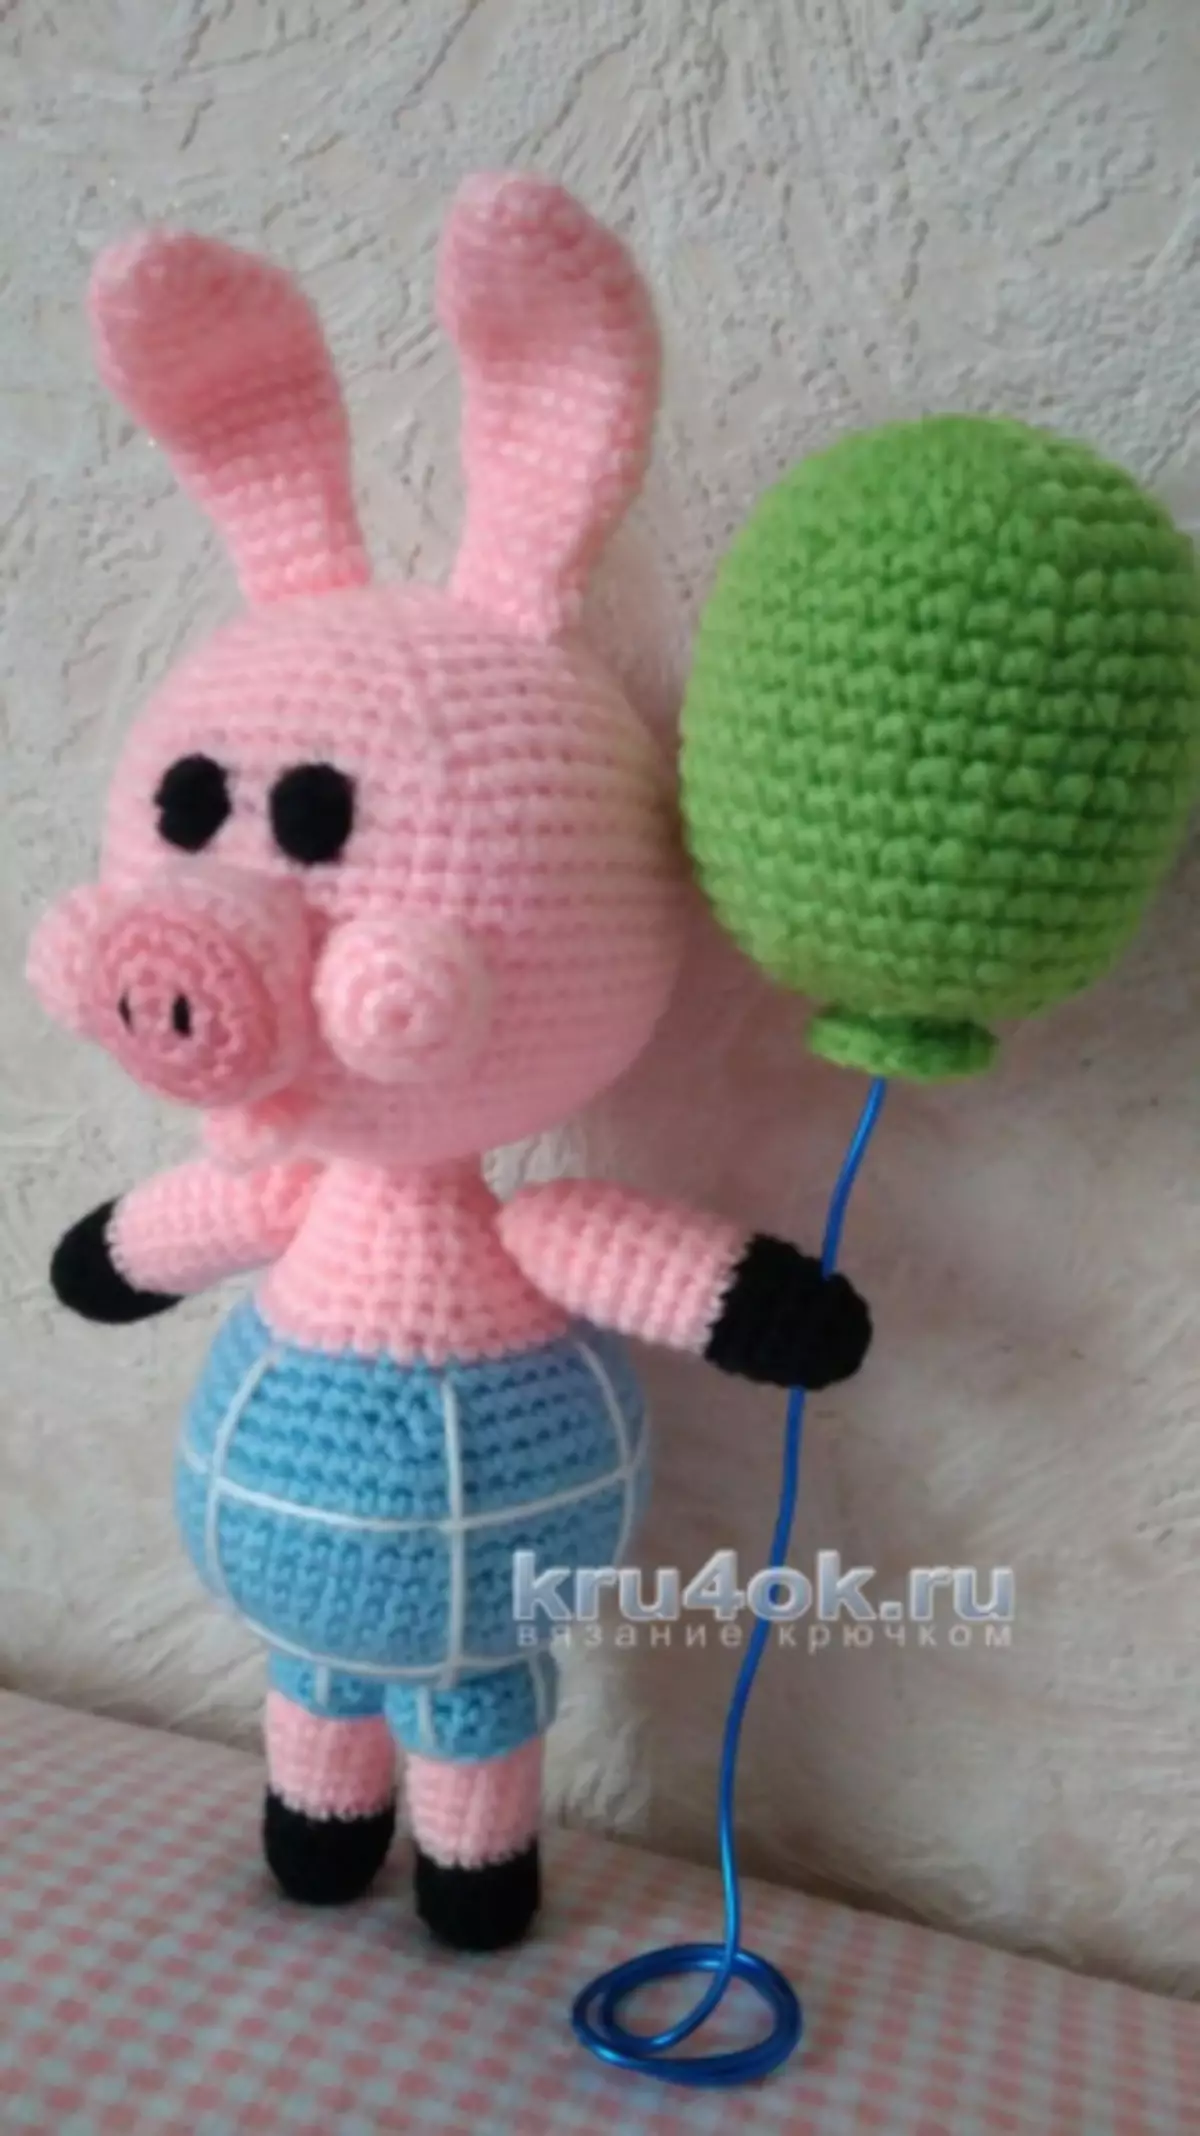 Winnie Pooh Crochet: Master Class med beskrivning och system